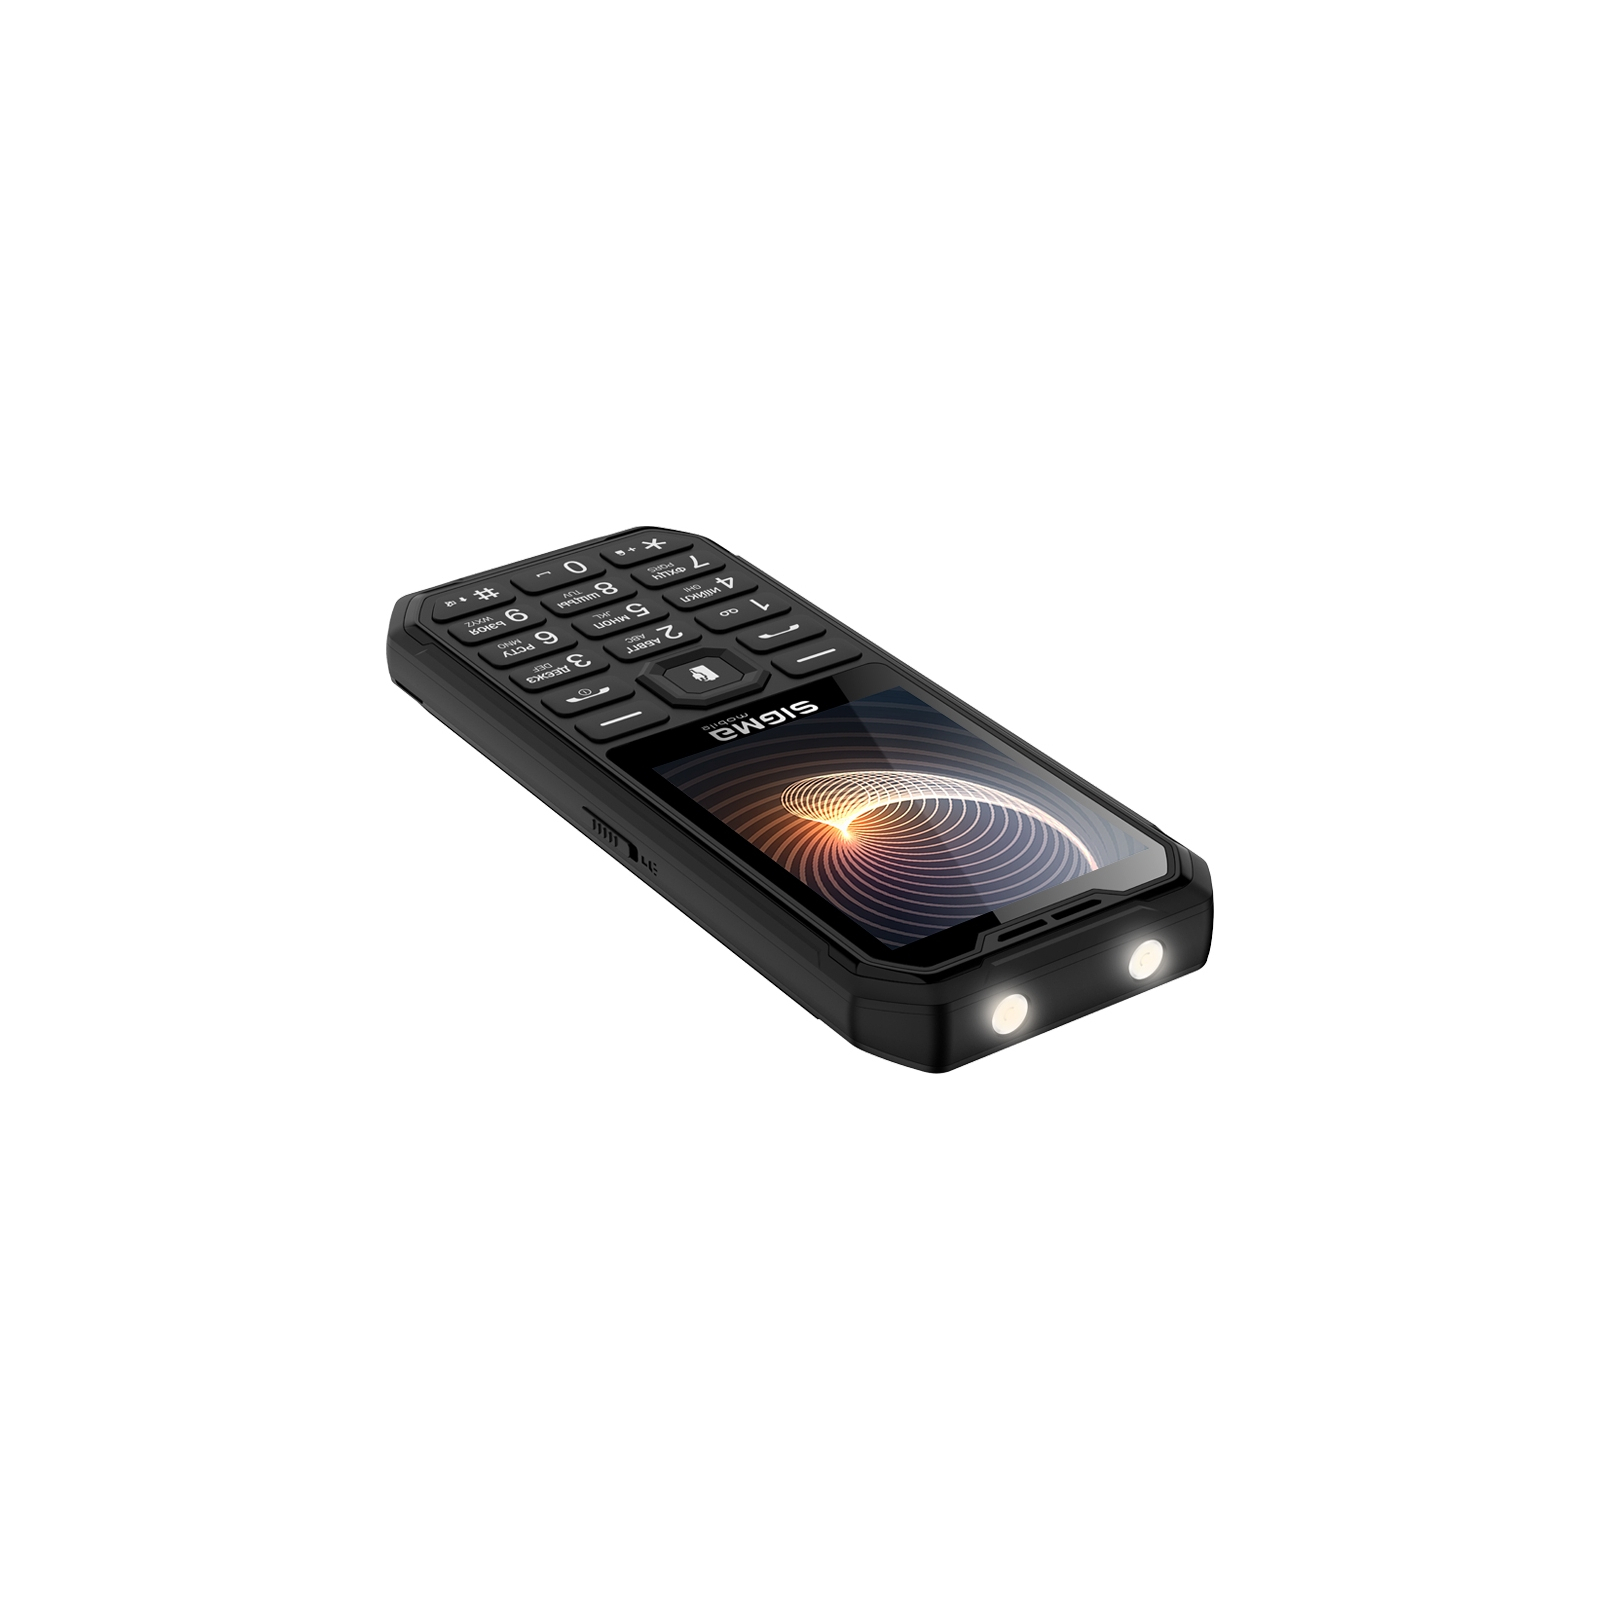 Мобильный телефон Sigma X-style 310 Force Type-C Black Orange (4827798855126) изображение 5